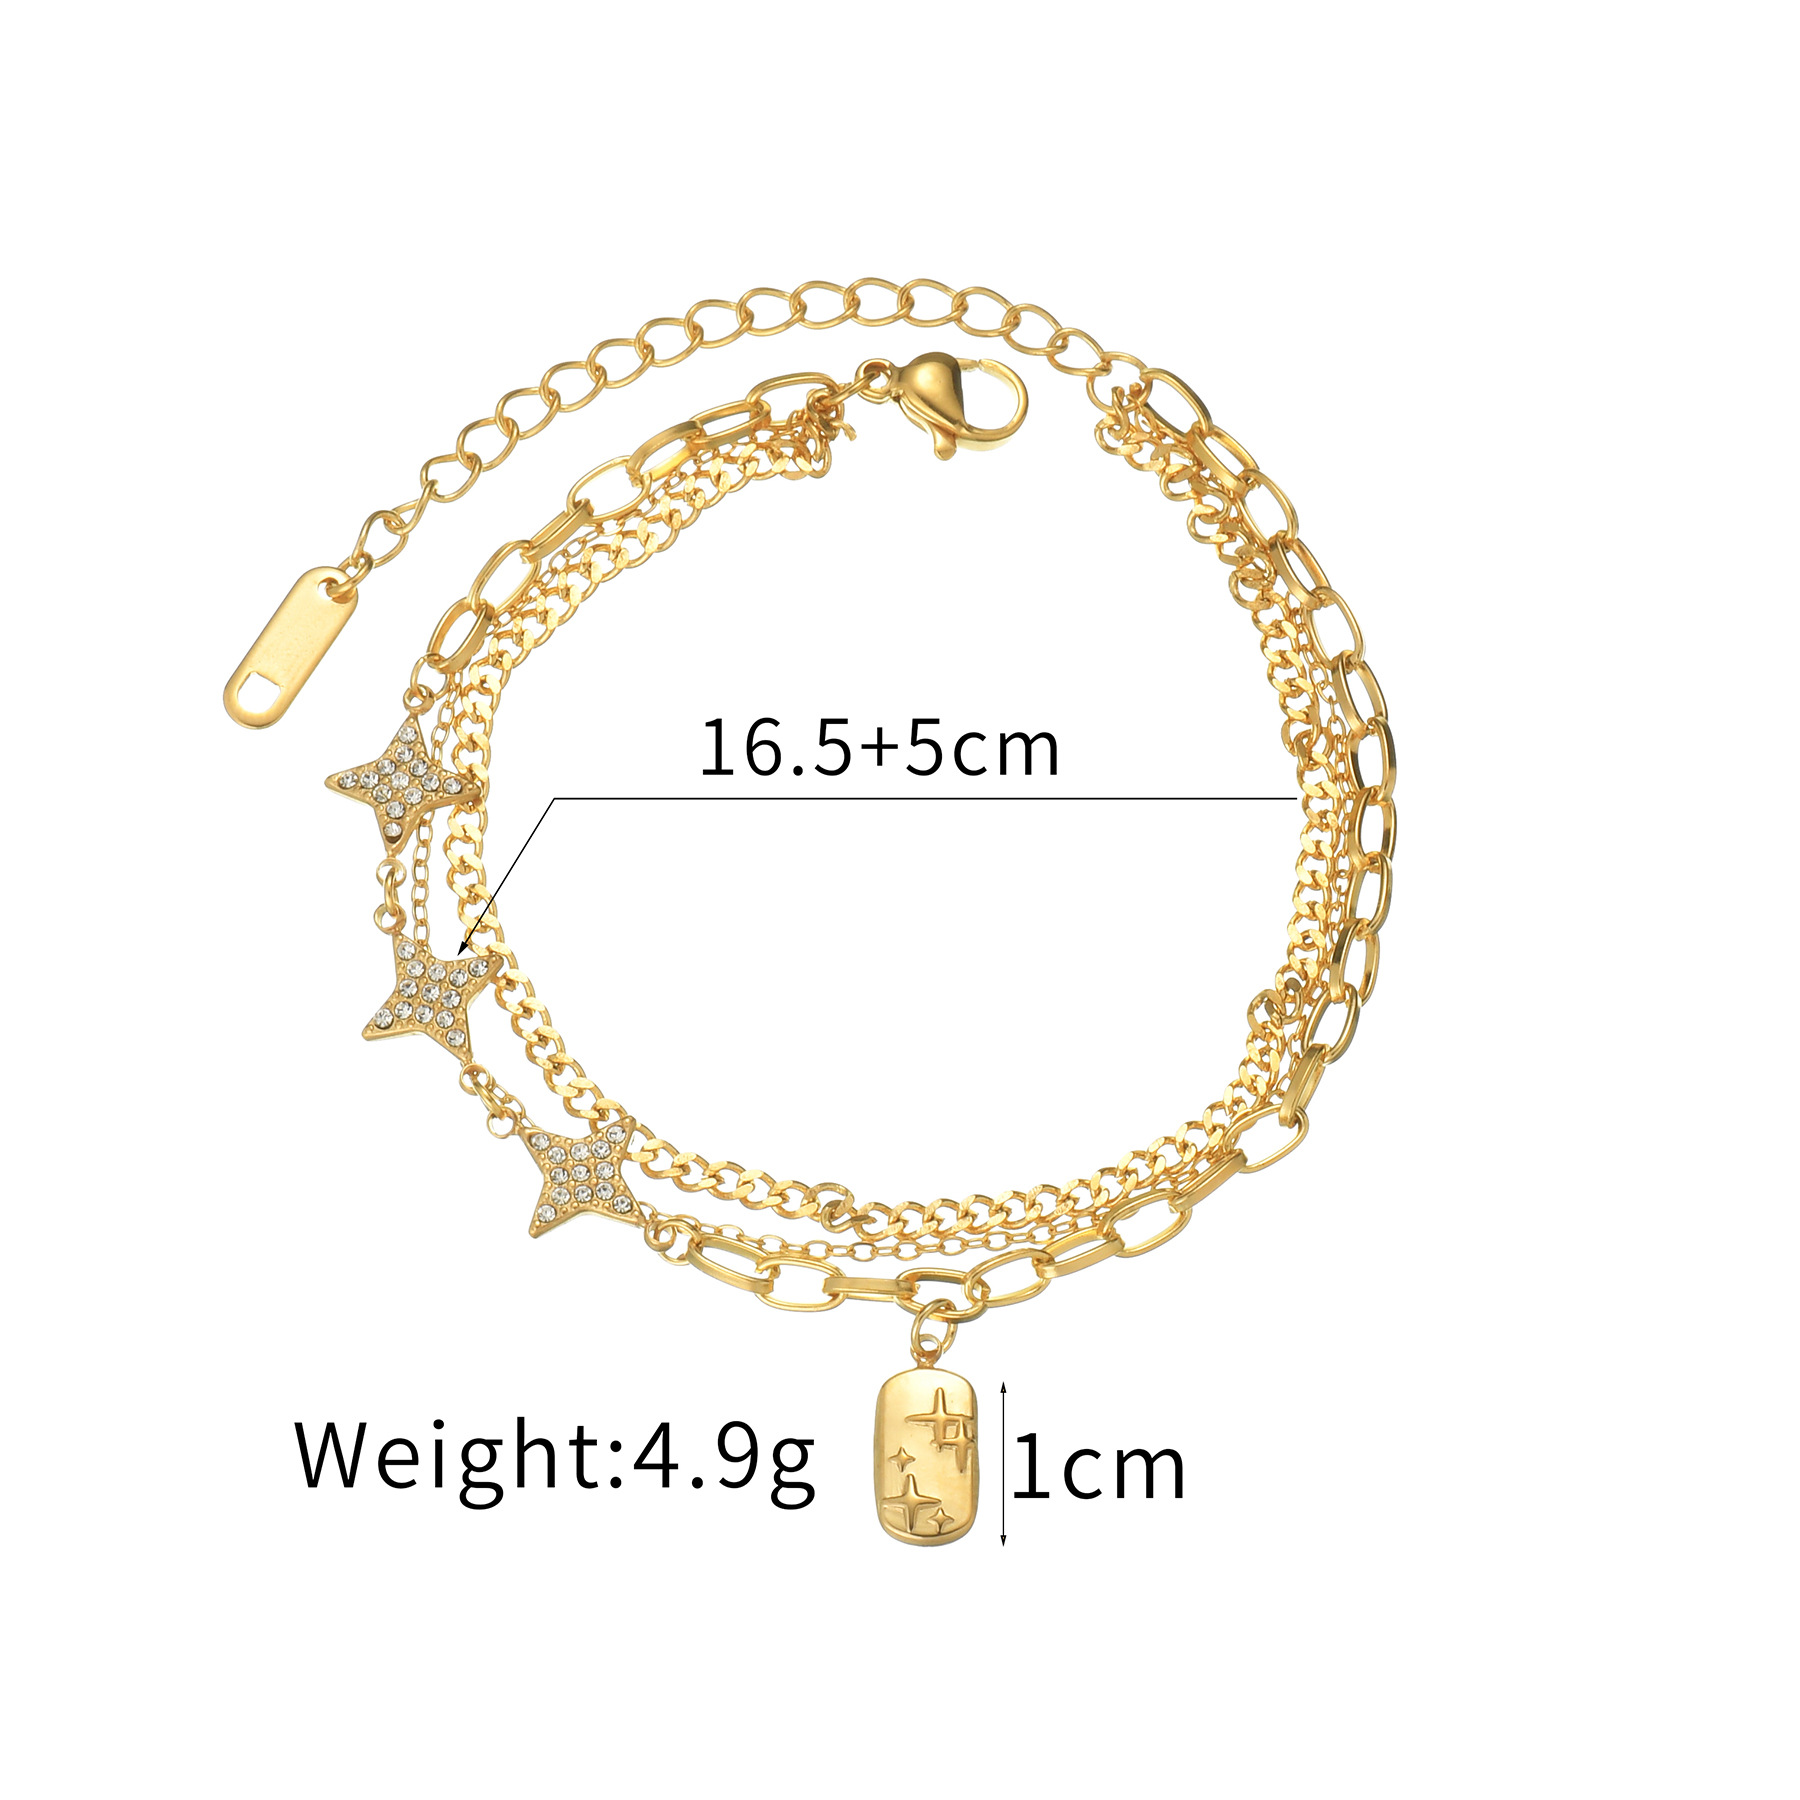 2:White star gold bracelet